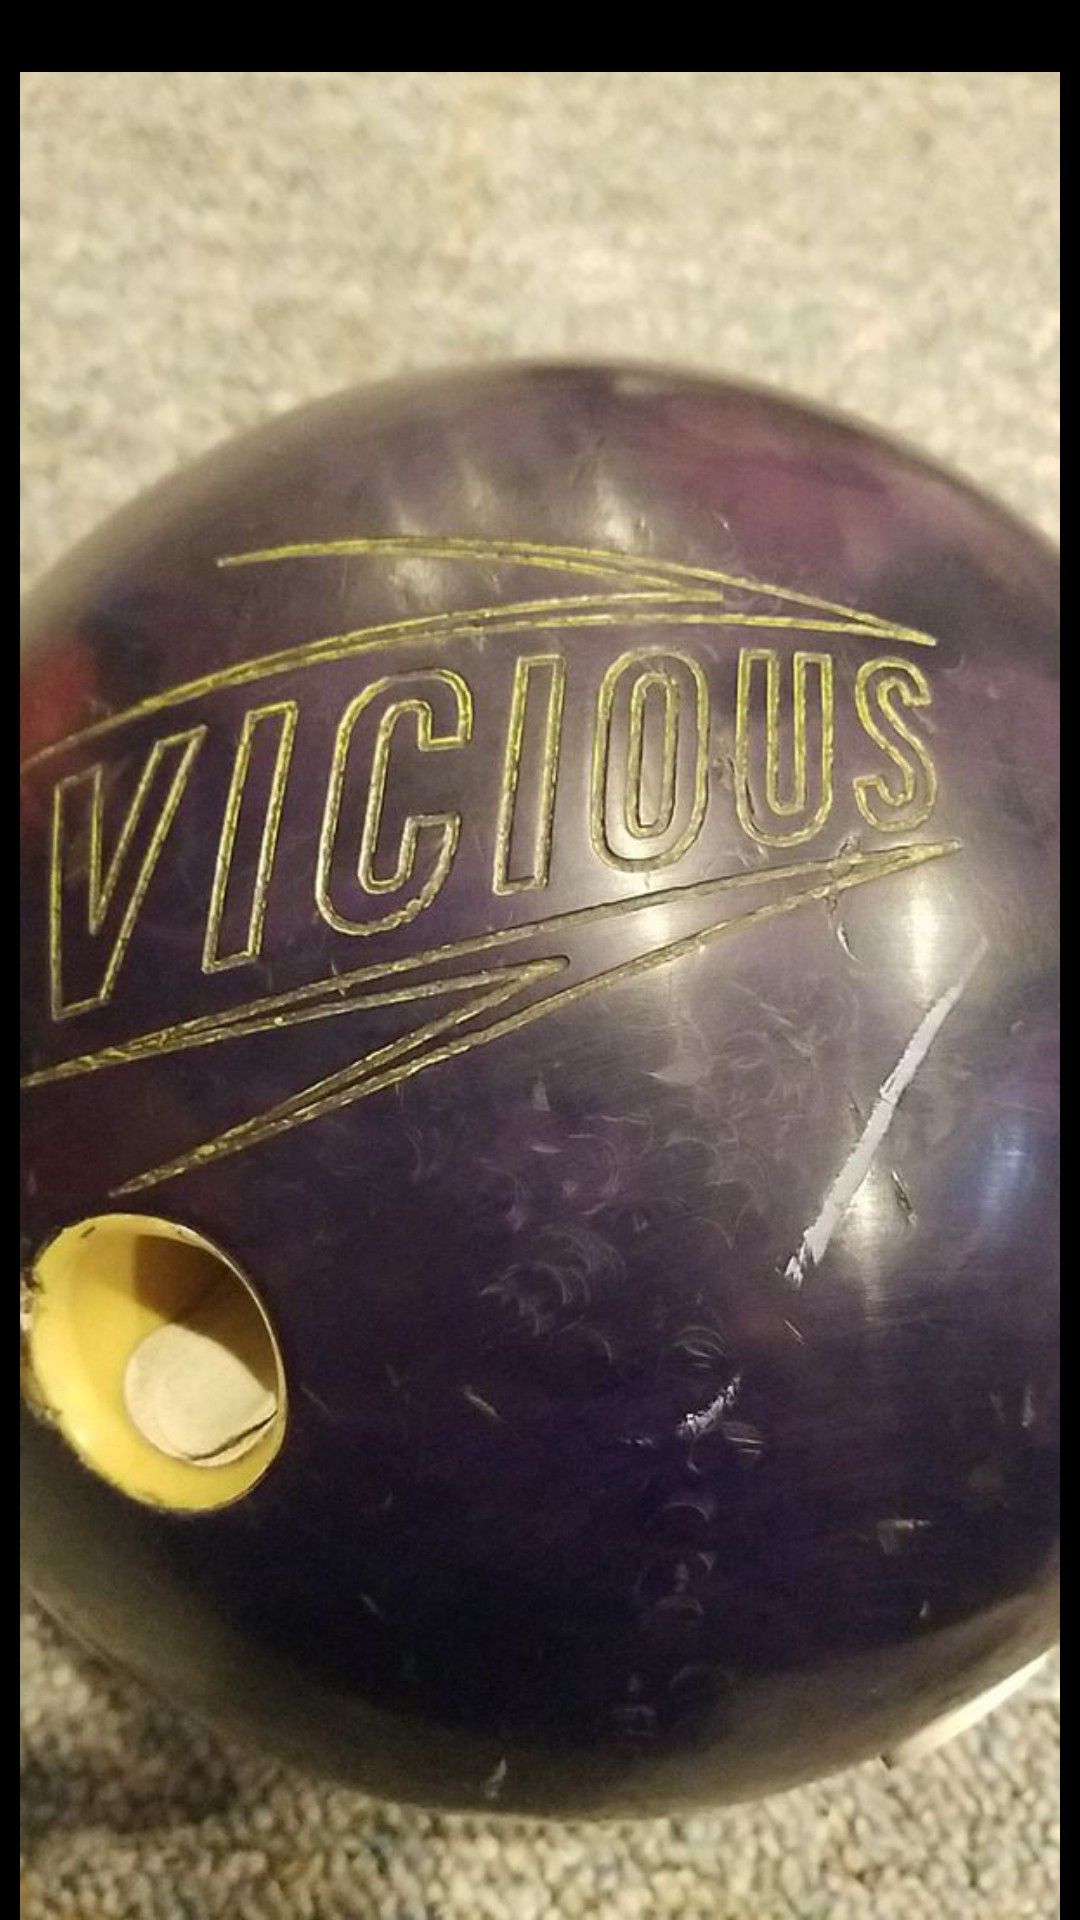 Hammer vicious bowling ball